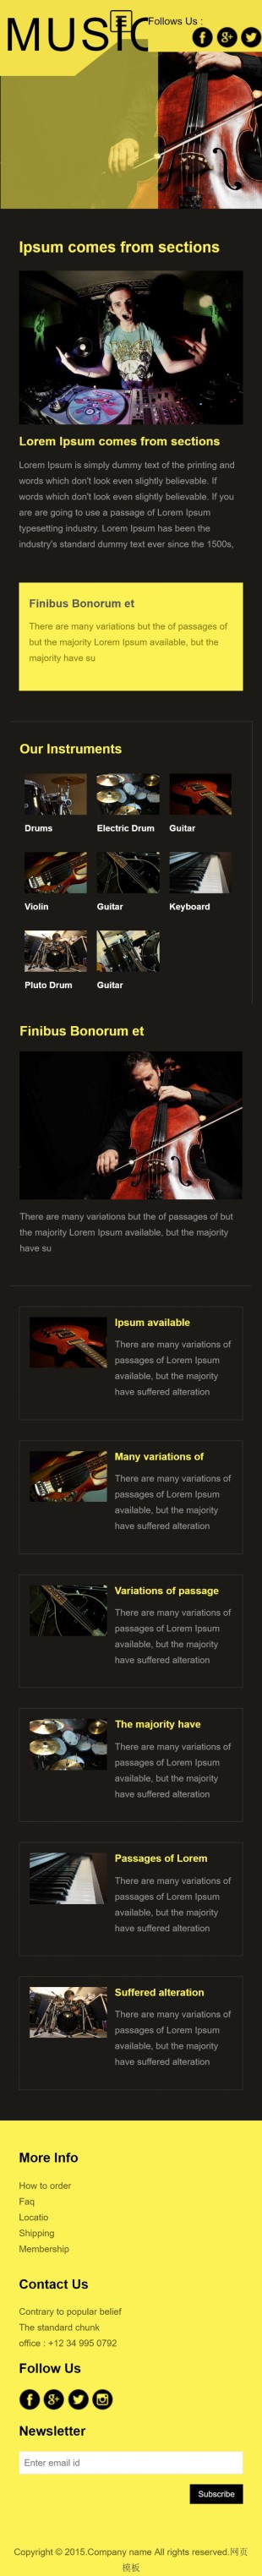 淡黄色大提琴音乐演奏英文网站模板制作手机图片